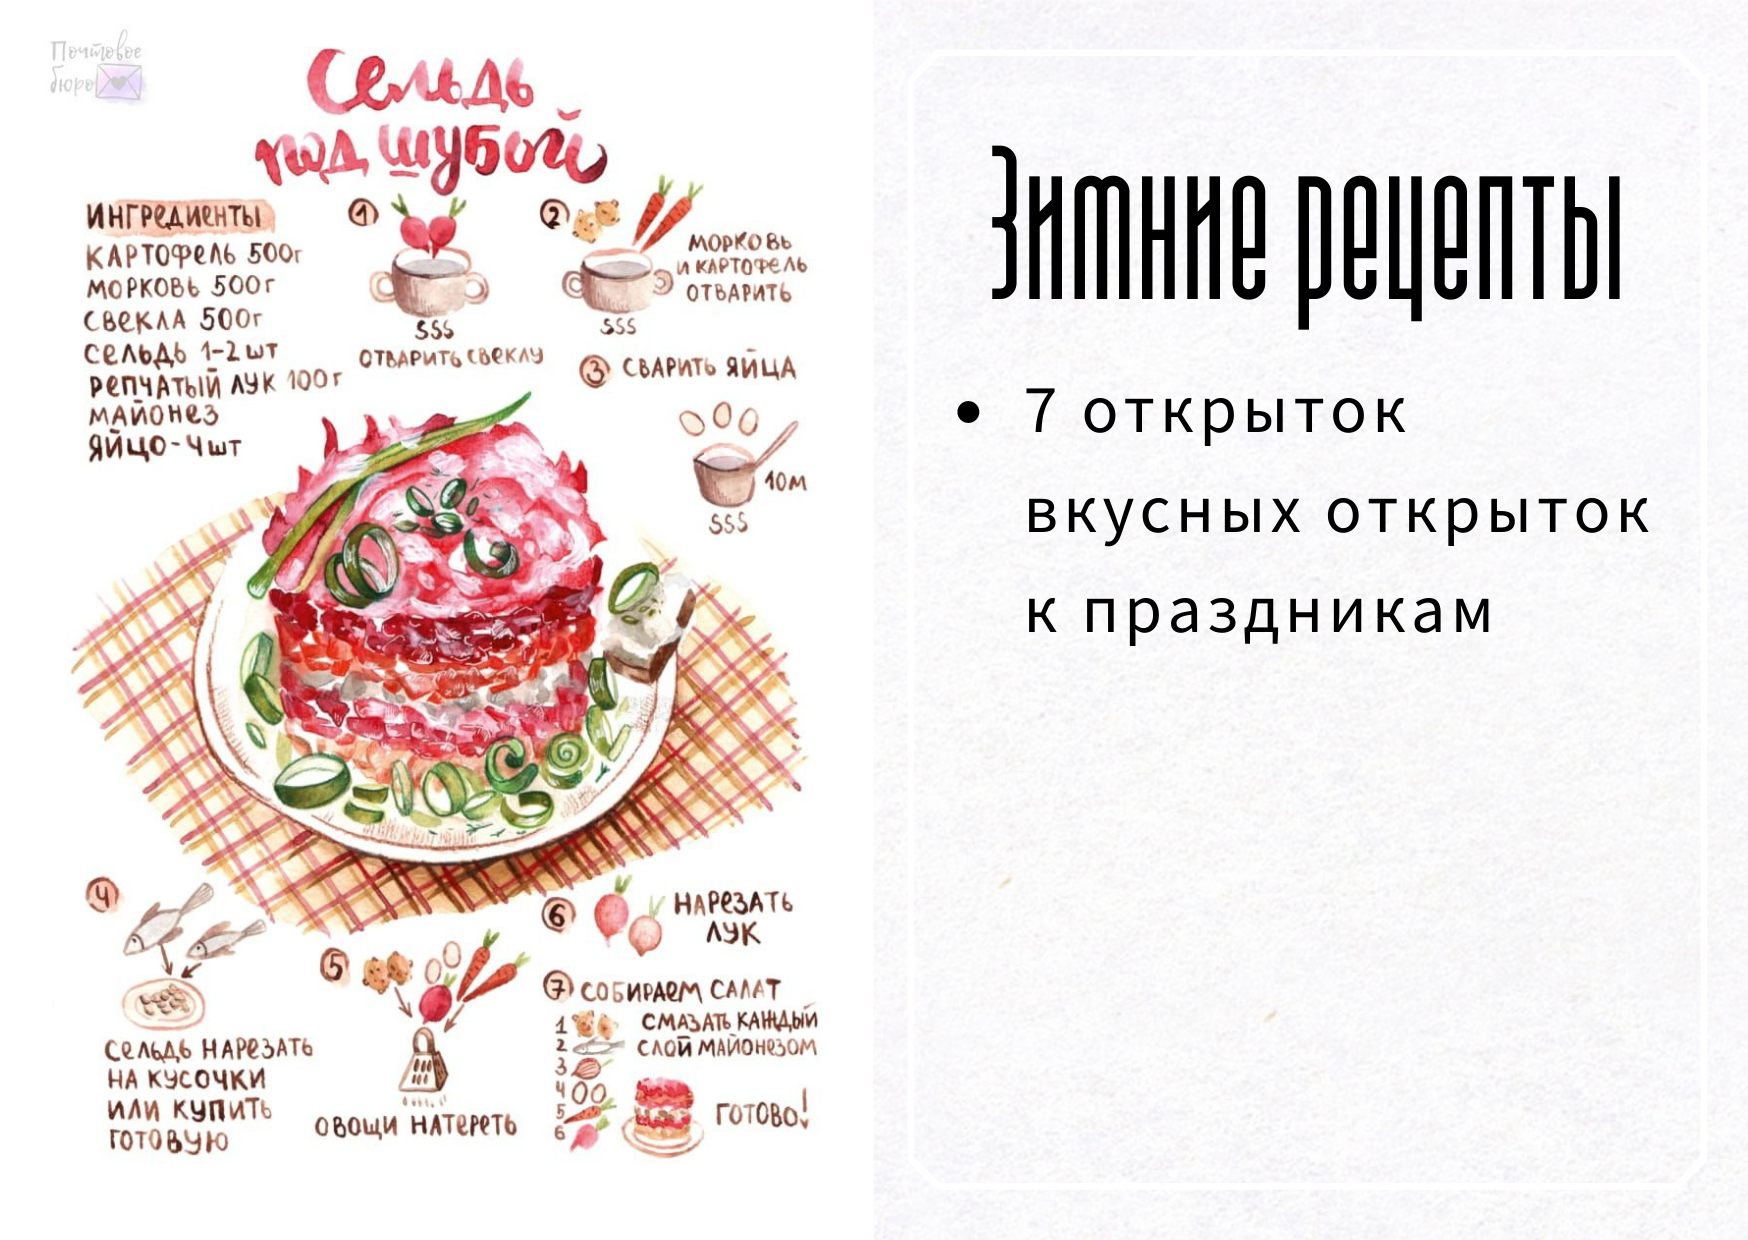 OLX.ua - объявления в Украине - открытки рецепты